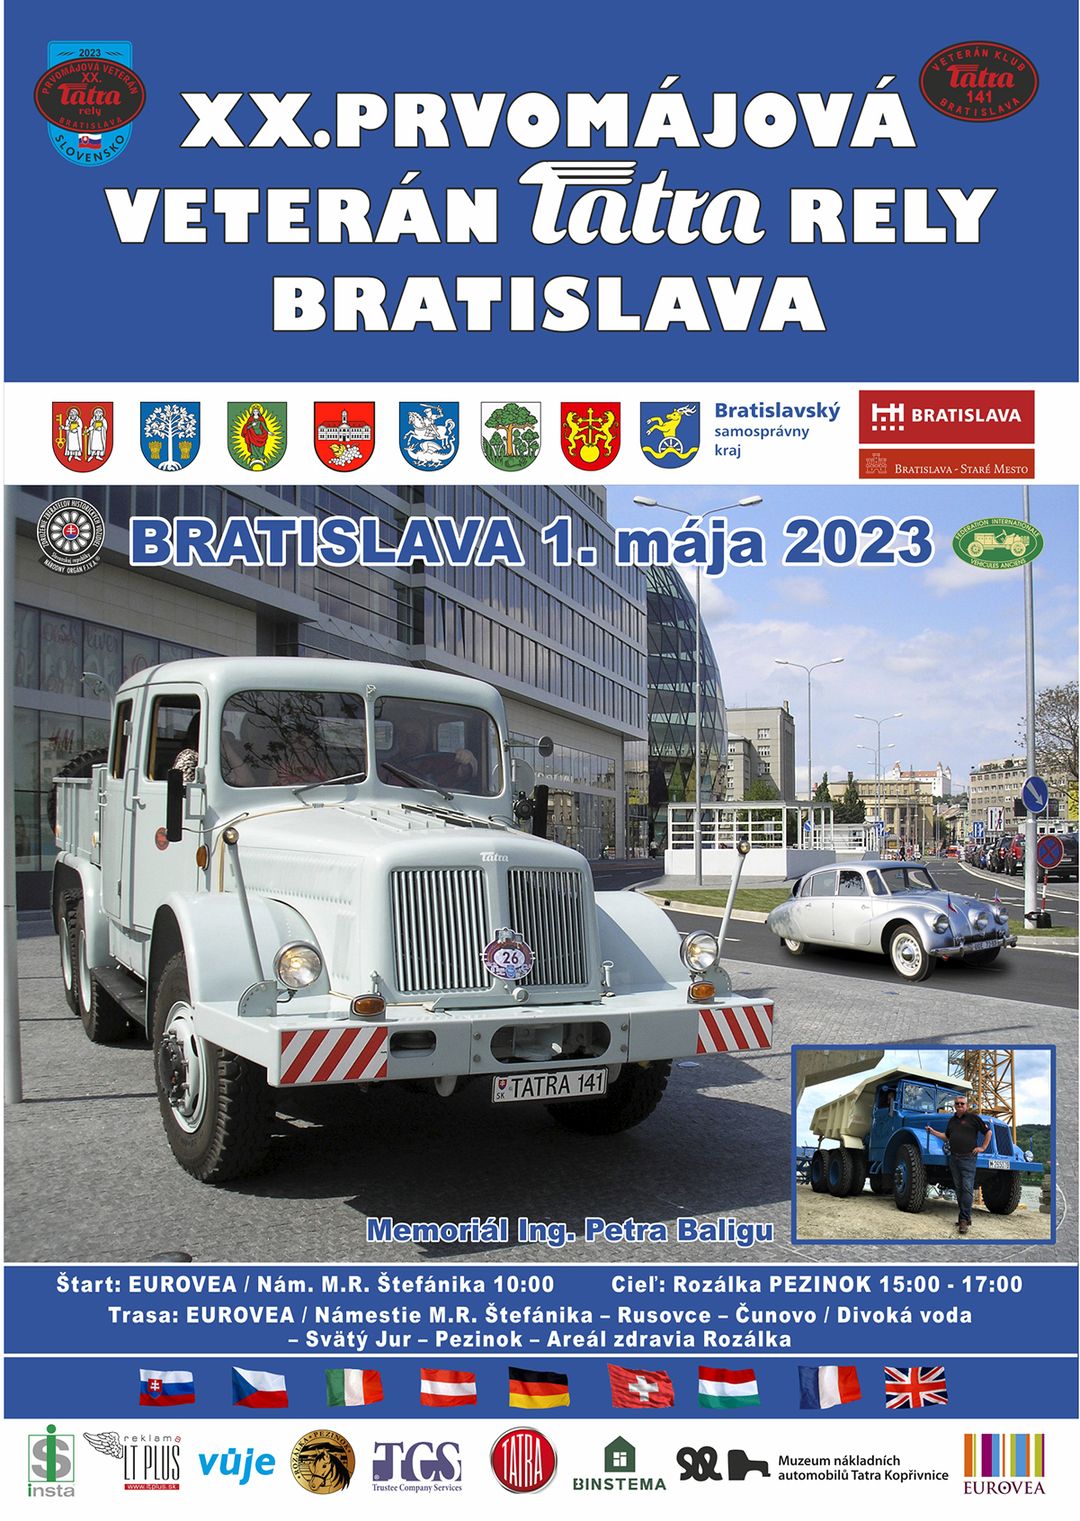 Prvomájová veterán Tatra rely Bratislava 2023 EUROVEA - Námestie M.R. Štefánika